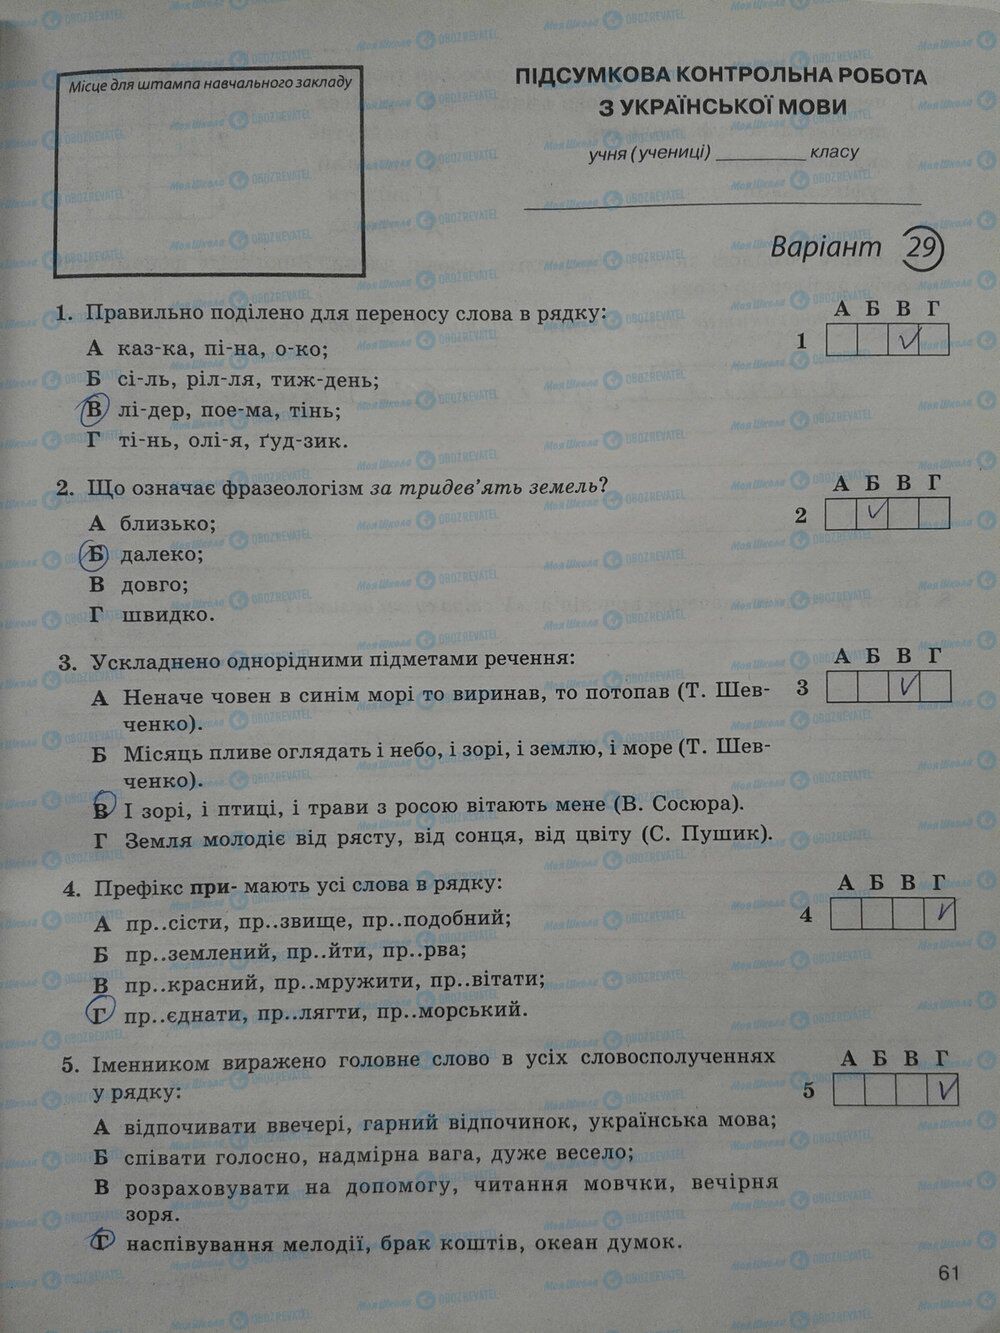 ГДЗ Укр мова 5 класс страница стр. 61